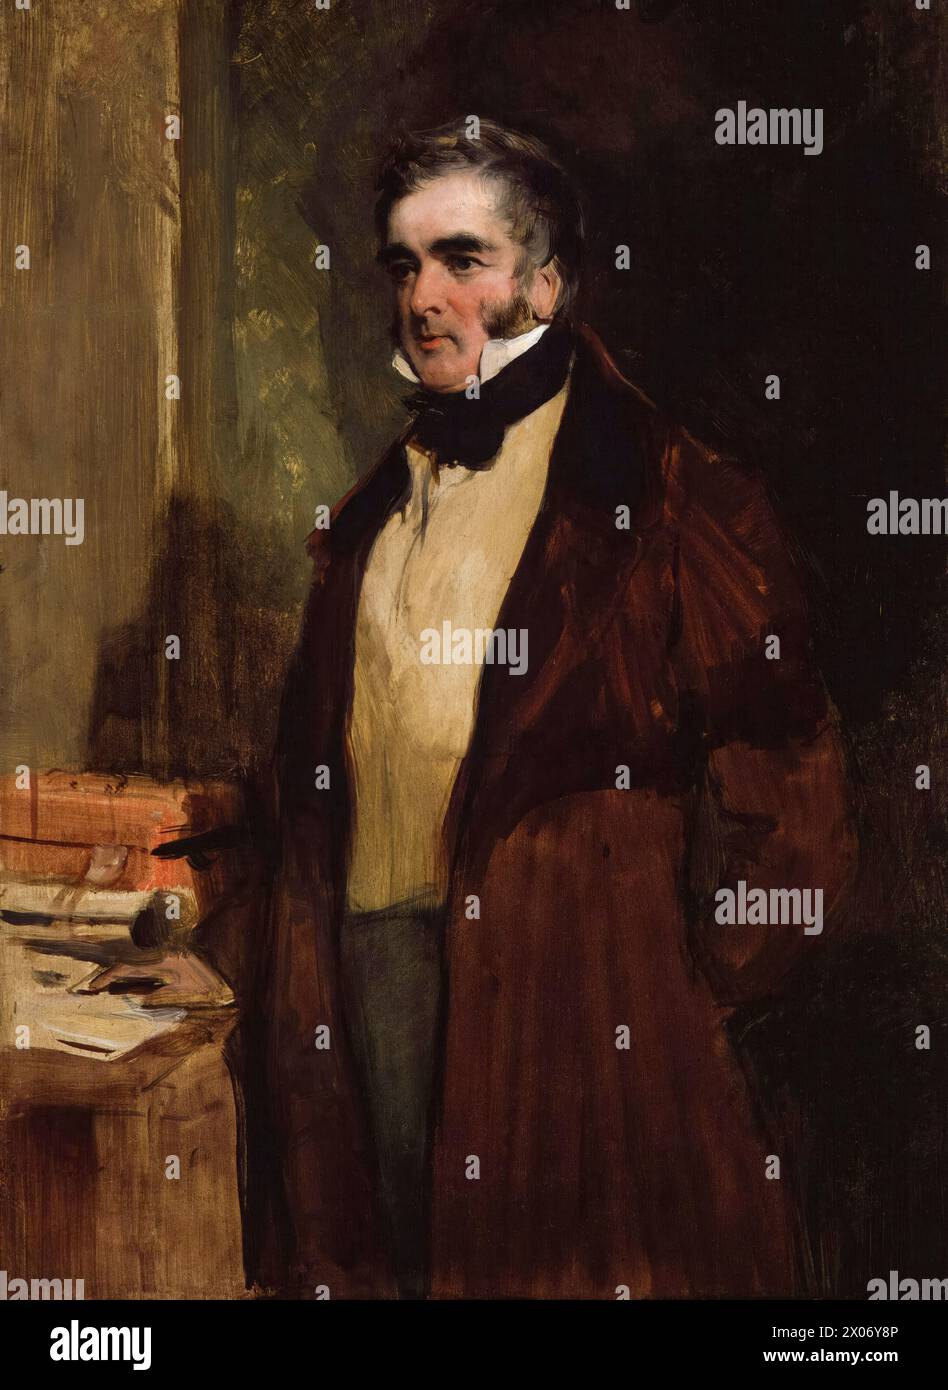 William Lamb, II visconte Melbourne (1779-1848), noto come "Lord Melbourne", primo ministro del Regno Unito luglio-novembre 1834 e 1835-1841, ritratto a olio su tavola di Sir Edwin Henry Landseer, 1836 Foto Stock